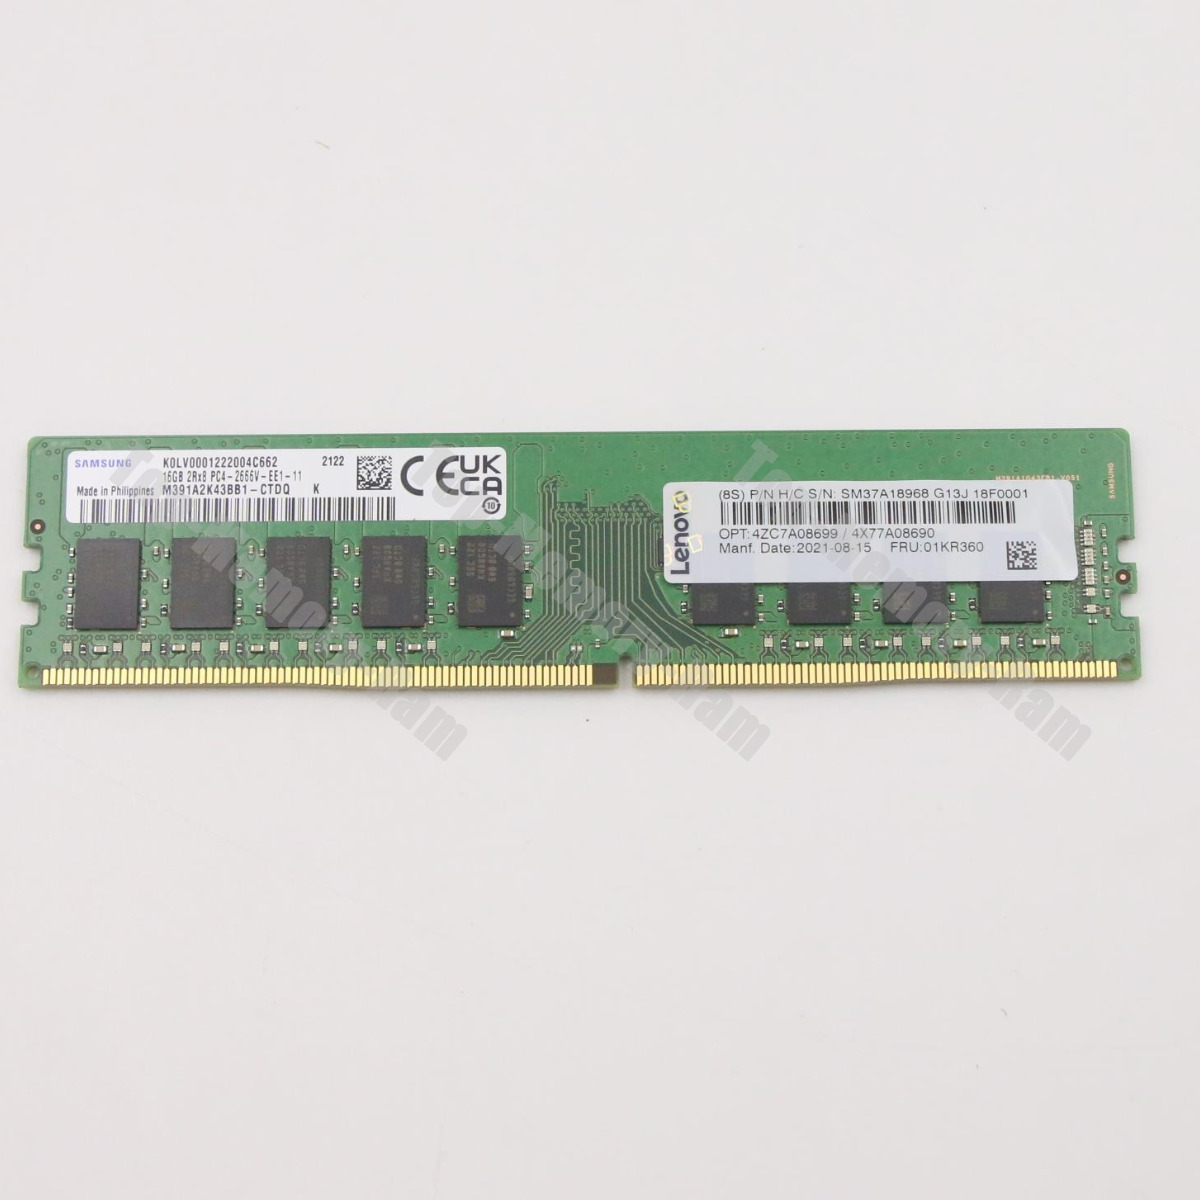 New Lenovo/IBM 01KR360 4ZC7A08699 16GB DDR4 2666V Unbuffered ECC UDIMM Memory